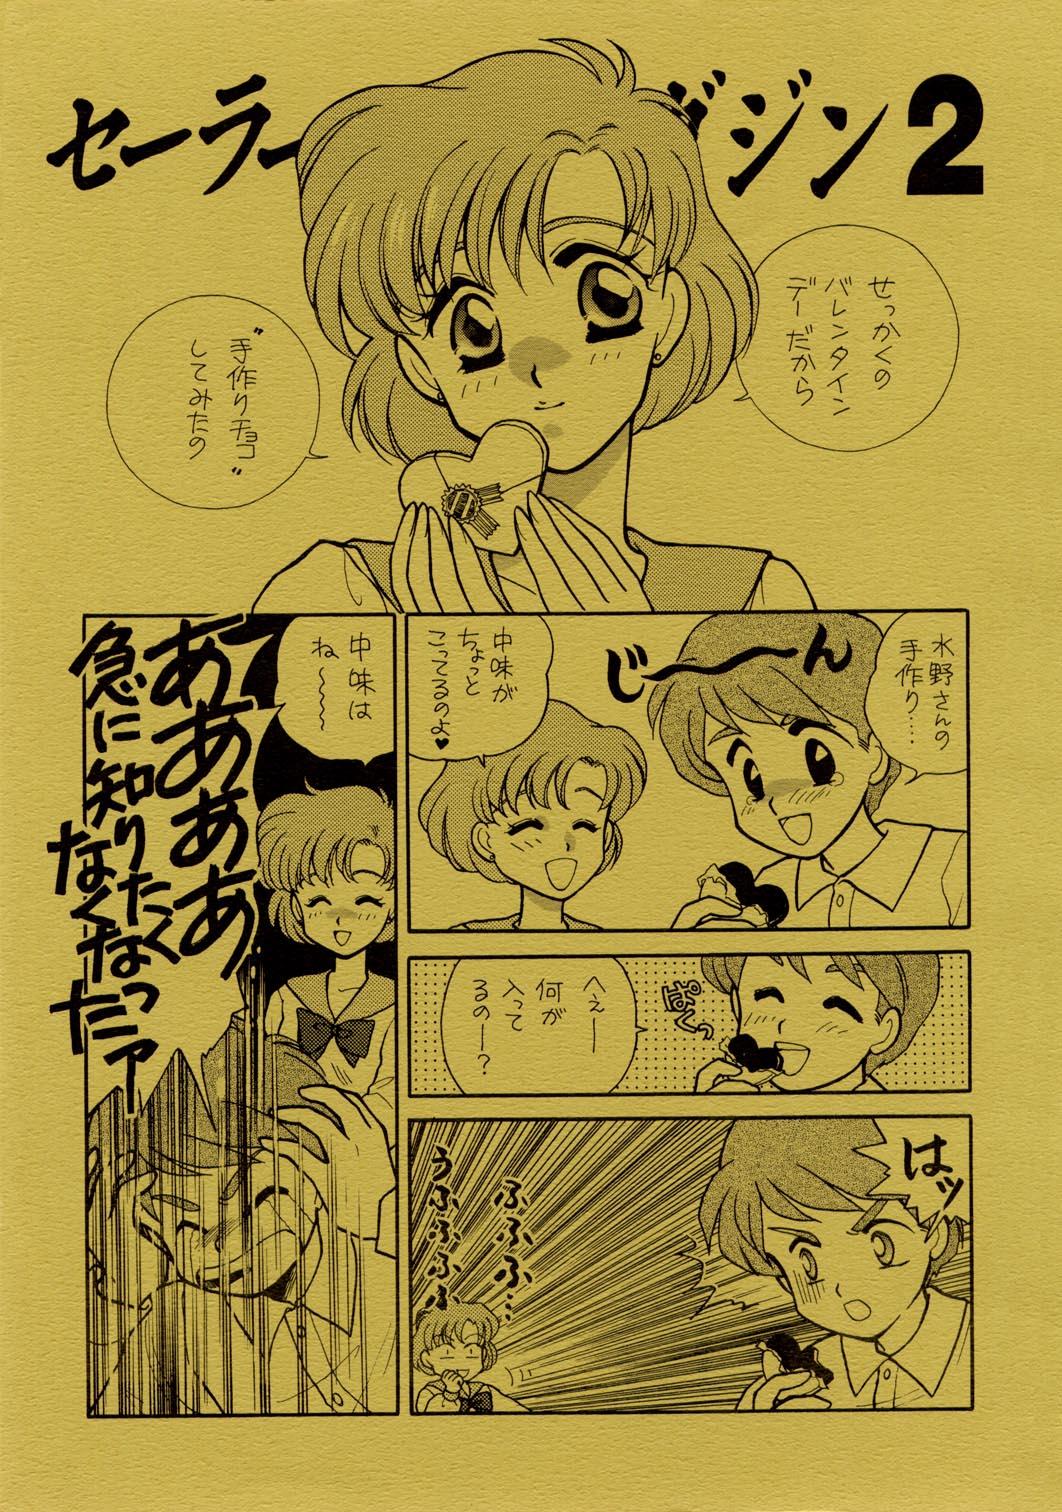 Sailor Moon JodanJanaiyo 29